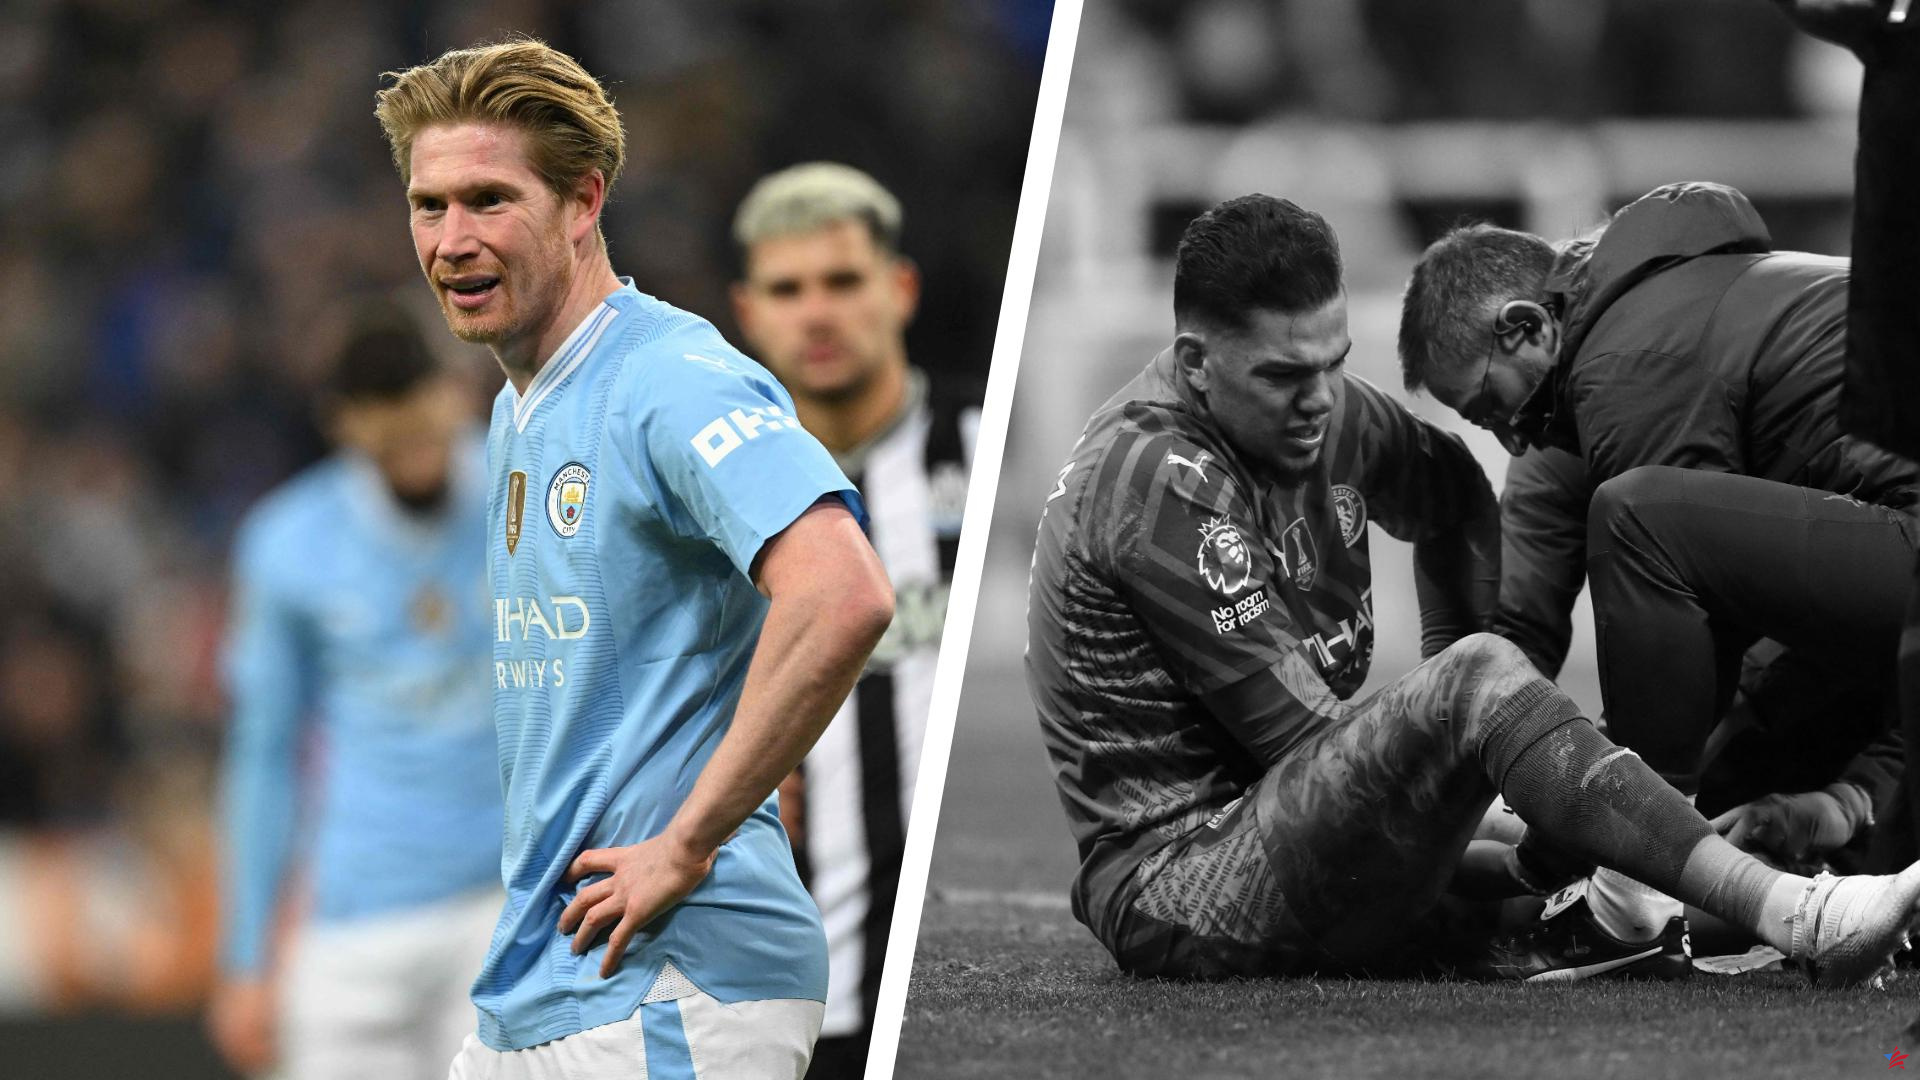 Newcastle-Manchester City: Kévin De Bruyne lo cambió todo, Ederson perdió y luego se lesionó... los altibajos